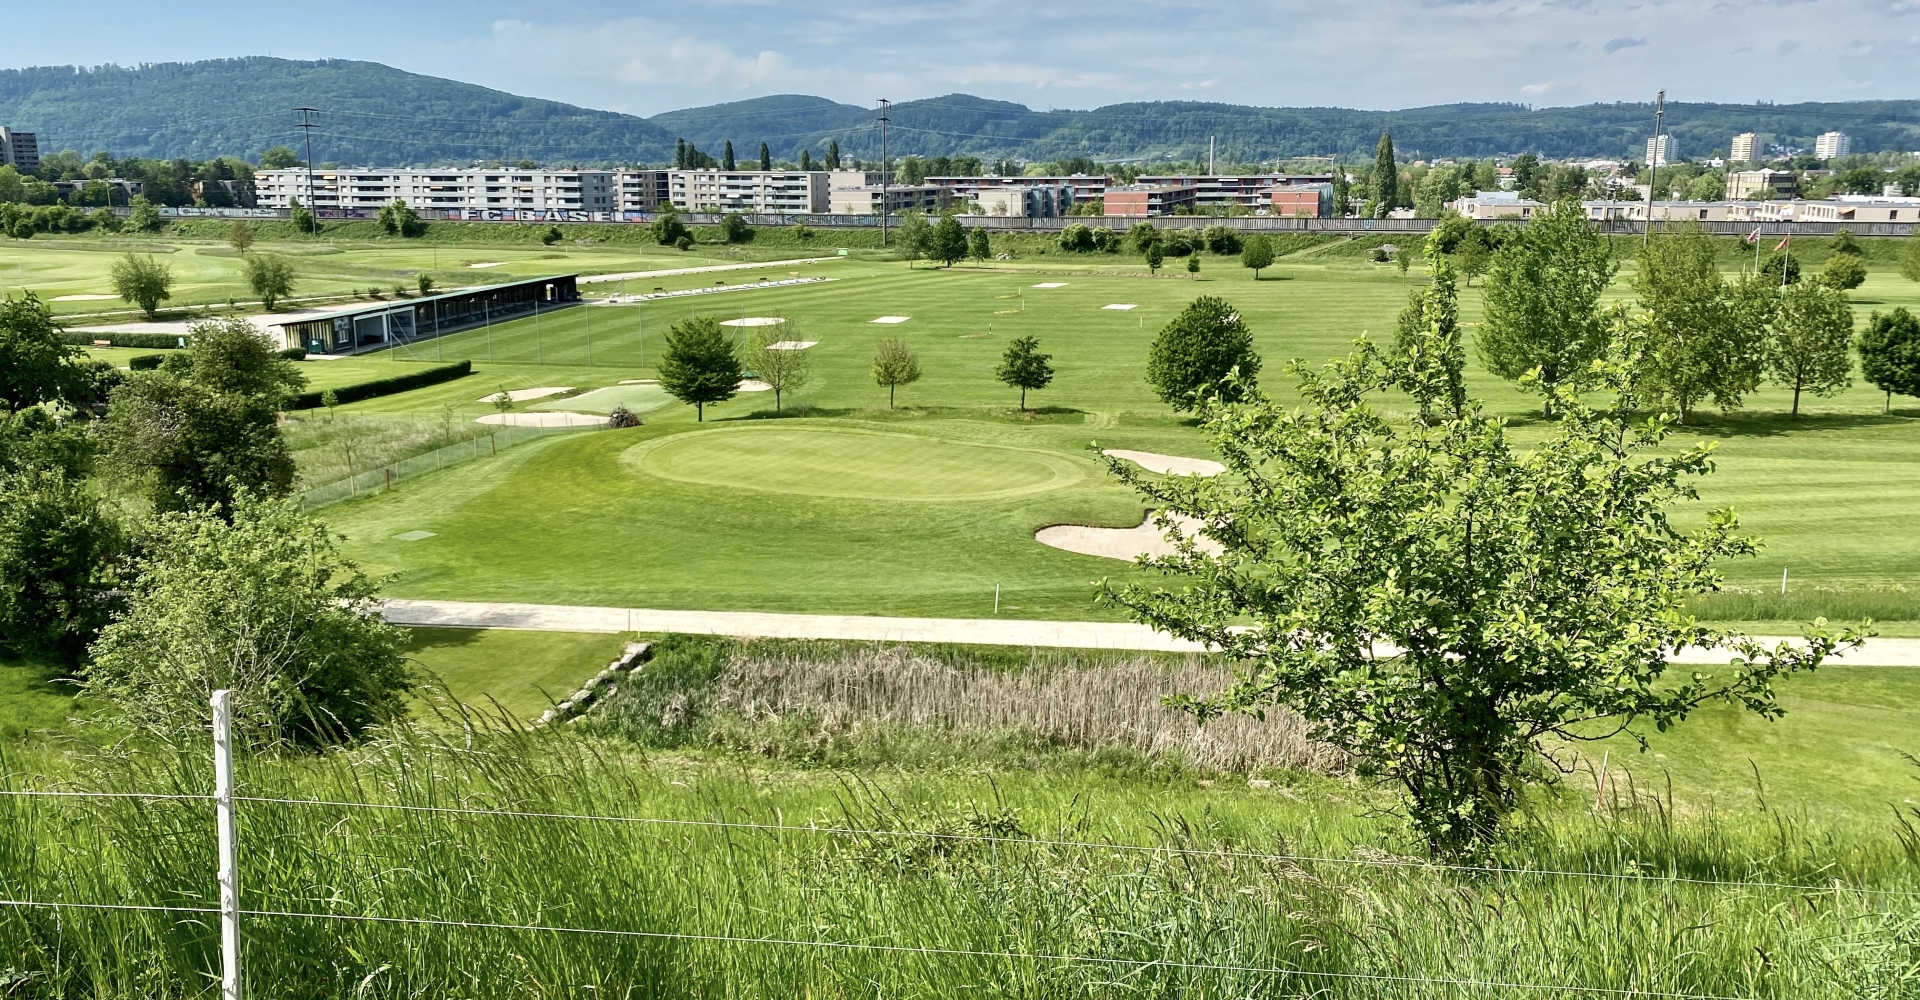 Golfplatz finden - Golf spielen - Golfspielen - Golfanlage - Golftraining - Golfkurse - Golfclub - Golfunterricht - Golfturniere - Golfwettkämpfe - Golfregeln - Golf - Golf für Anfänger - Golf für Fortgeschrittene - Golf für Kinder - Golf für Erwachsene - Golfevents -  Golf für Profis - Golfstunden - Golflehrer - Golfreisen - Golf Mitgliedschaft - Golfausrüstung - Golfplatz reservieren - Golf Rheinfelden - Golf Basel - Golf Aargau - golfzentrum.ch - Find Golf Course - Golf Playing - Golf Course - Golf Training - Golf Courses - Golf Club - Golf Lessons - Golf Tournaments - Golf Competitions - Golf Rules - Golf - Golf for Beginners - Golf for Advanced Players - Golf for Kids - Golf for Adults - Golf Events - Golf for Professionals - Golf Lessons - Golf Instructor - Golf Travel - Golf Membership - Golf Equipment - Reserve Golf Course - Golf Rheinfelden - Golf Basel - Golf Aargau - golfzentrum.ch